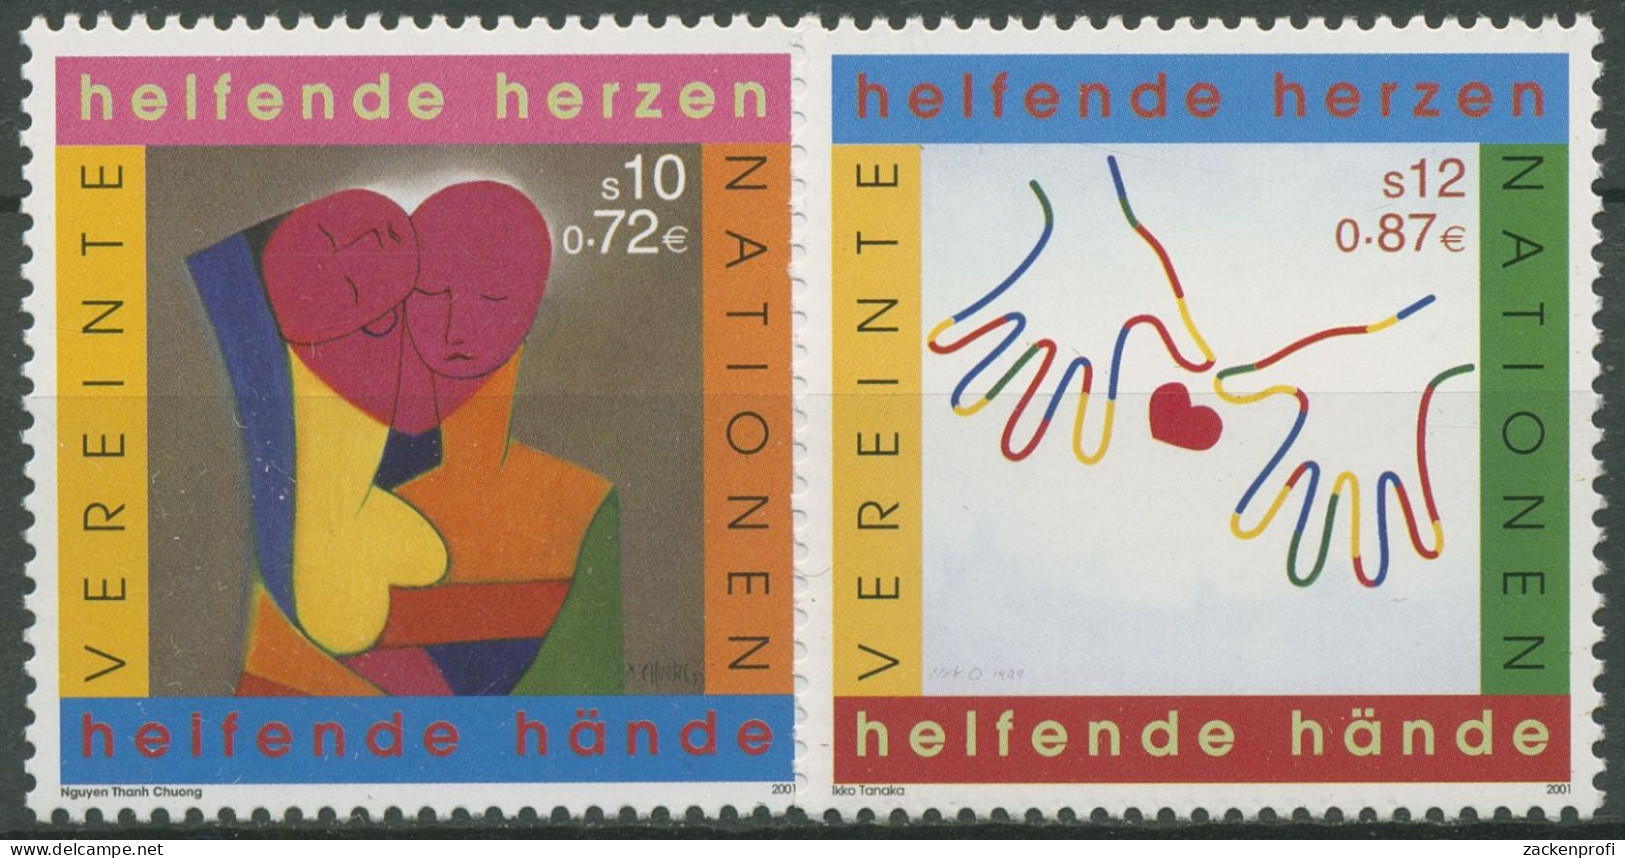 UNO Wien 2001 Jahr Des Ehrenamtes Gemälde 331/32 Postfrisch - Neufs